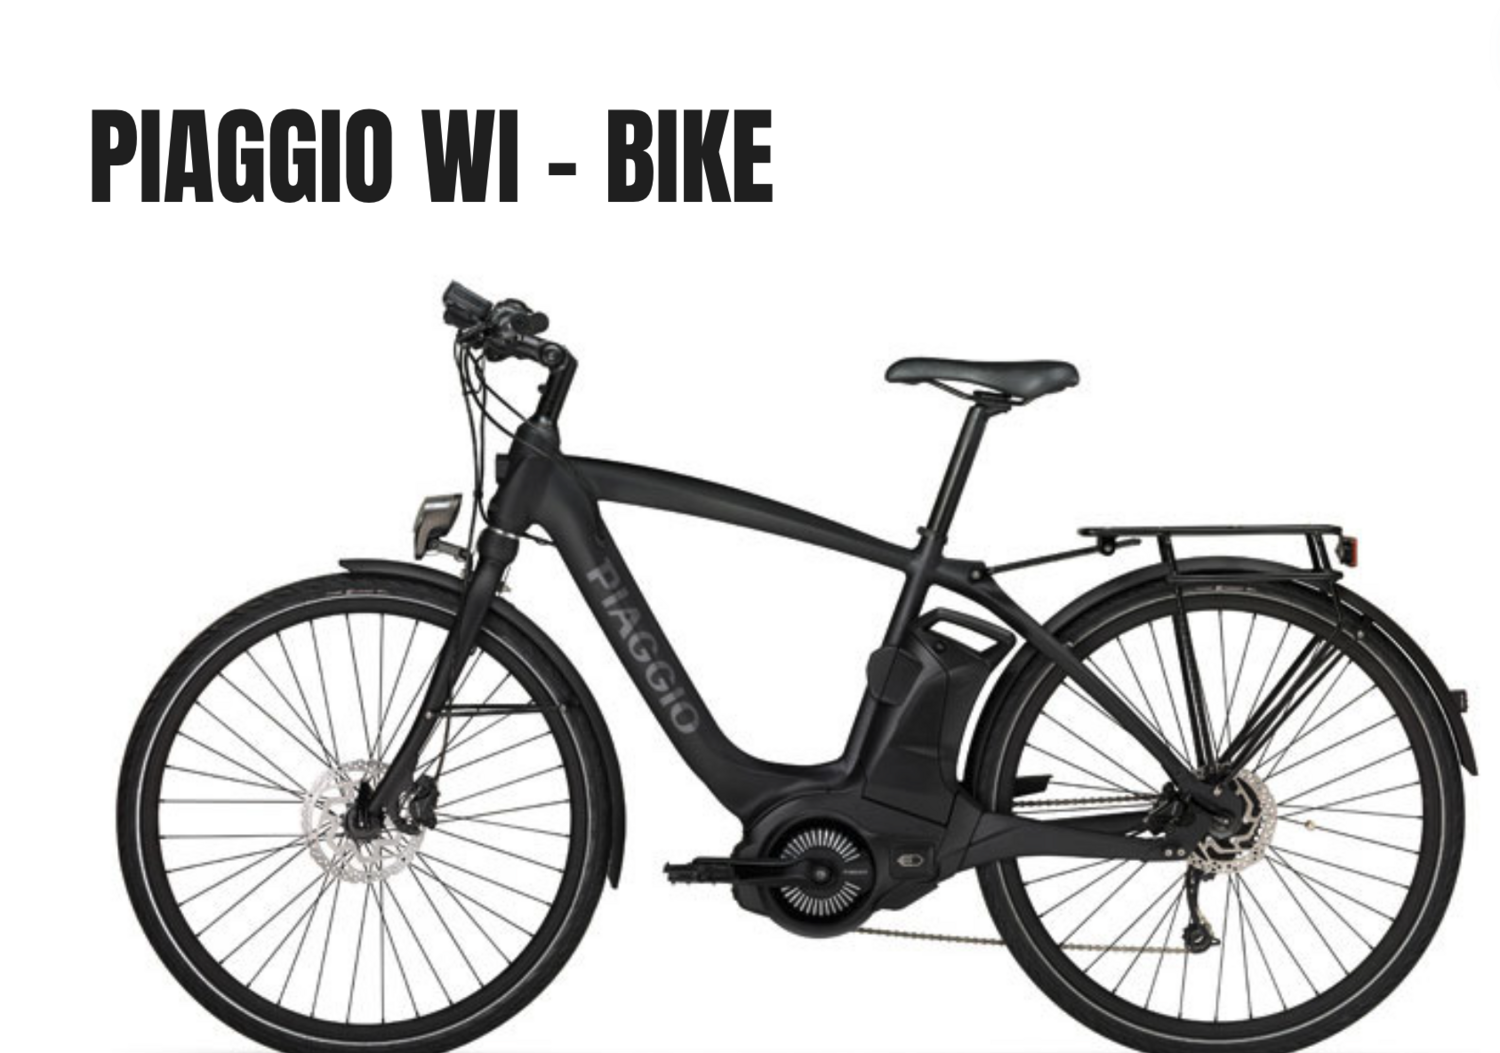 Piaggio Wi-Bike